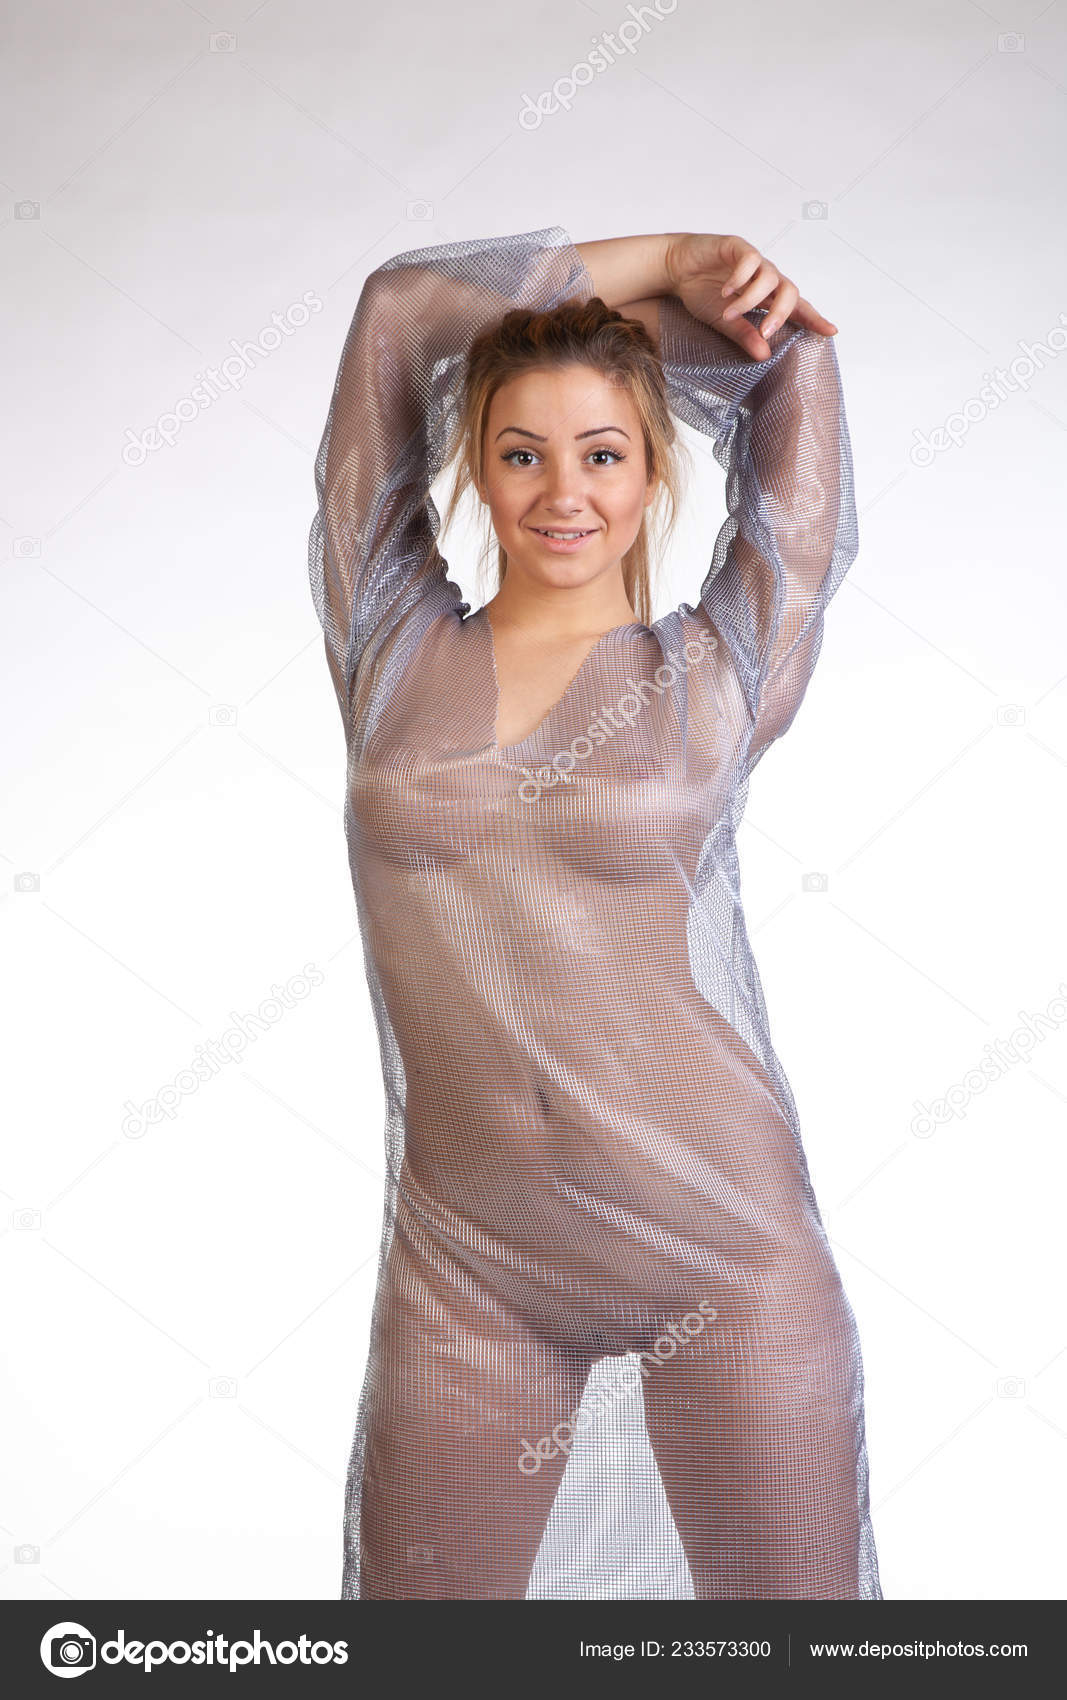 https://st4n.depositphotos.com/10086424/23357/i/1600/depositphotos_233573300-stock-photo-young-beautiful-girl-posing-nude.jpg